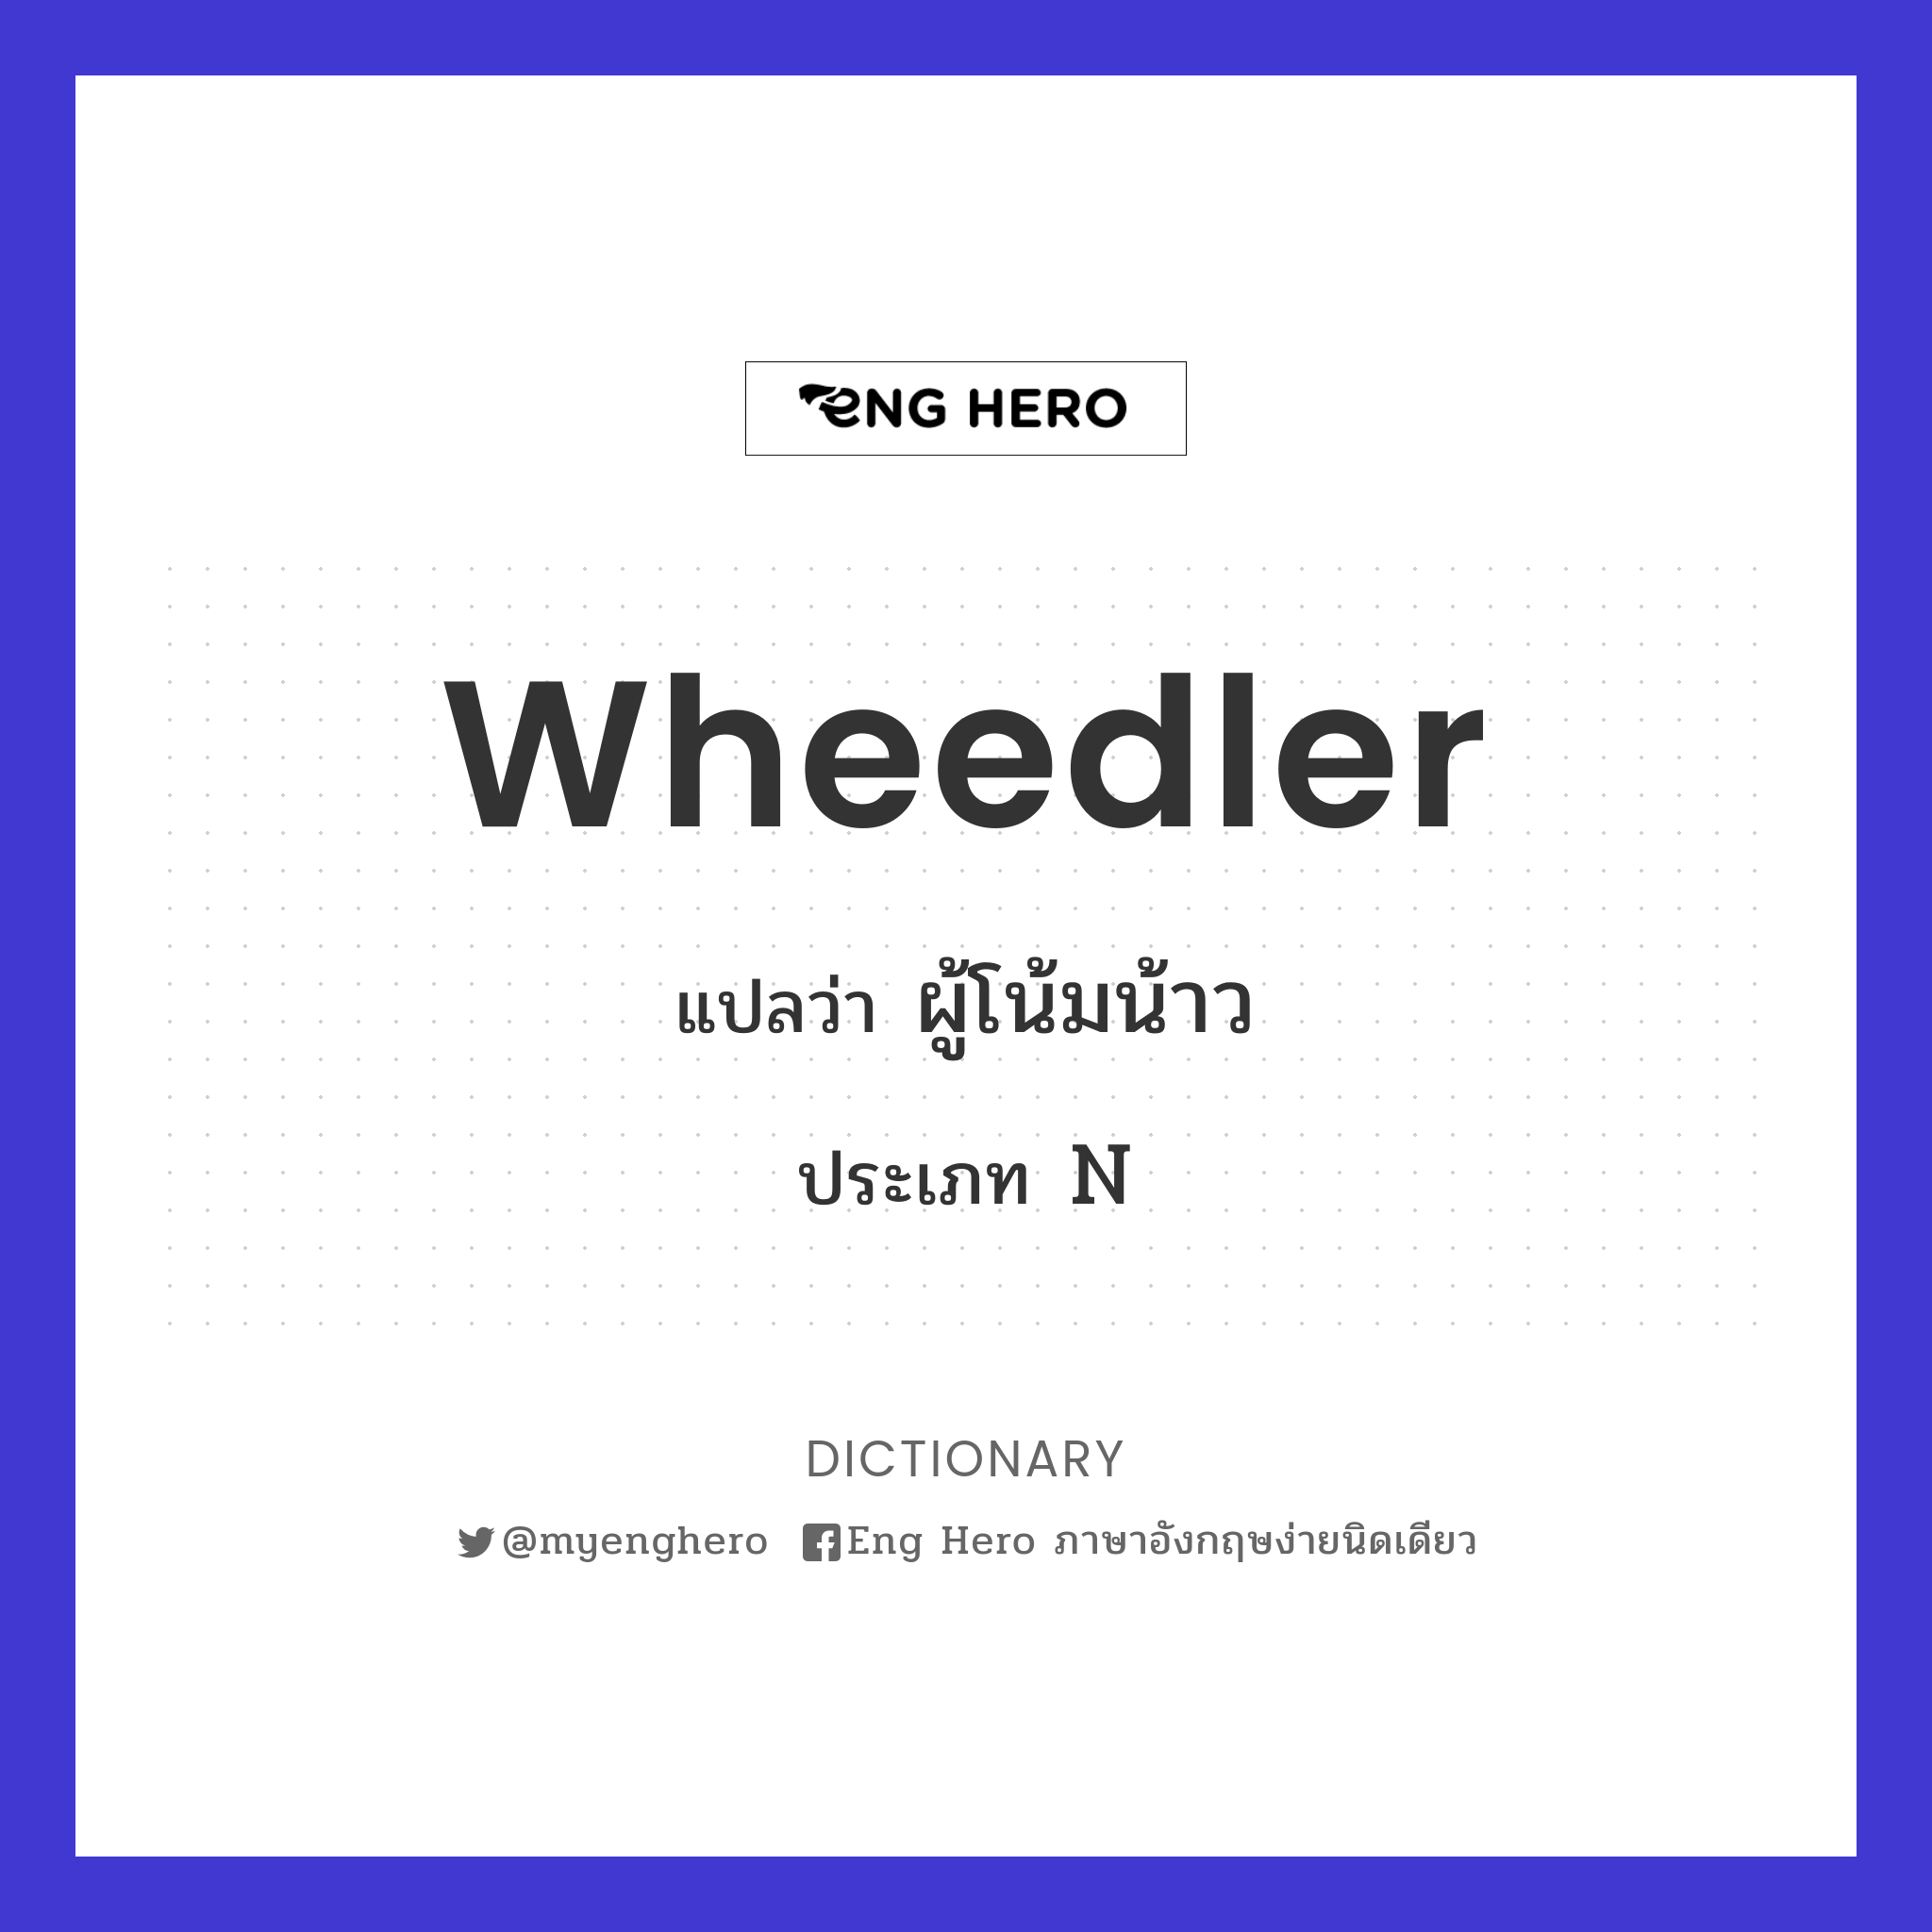 wheedler